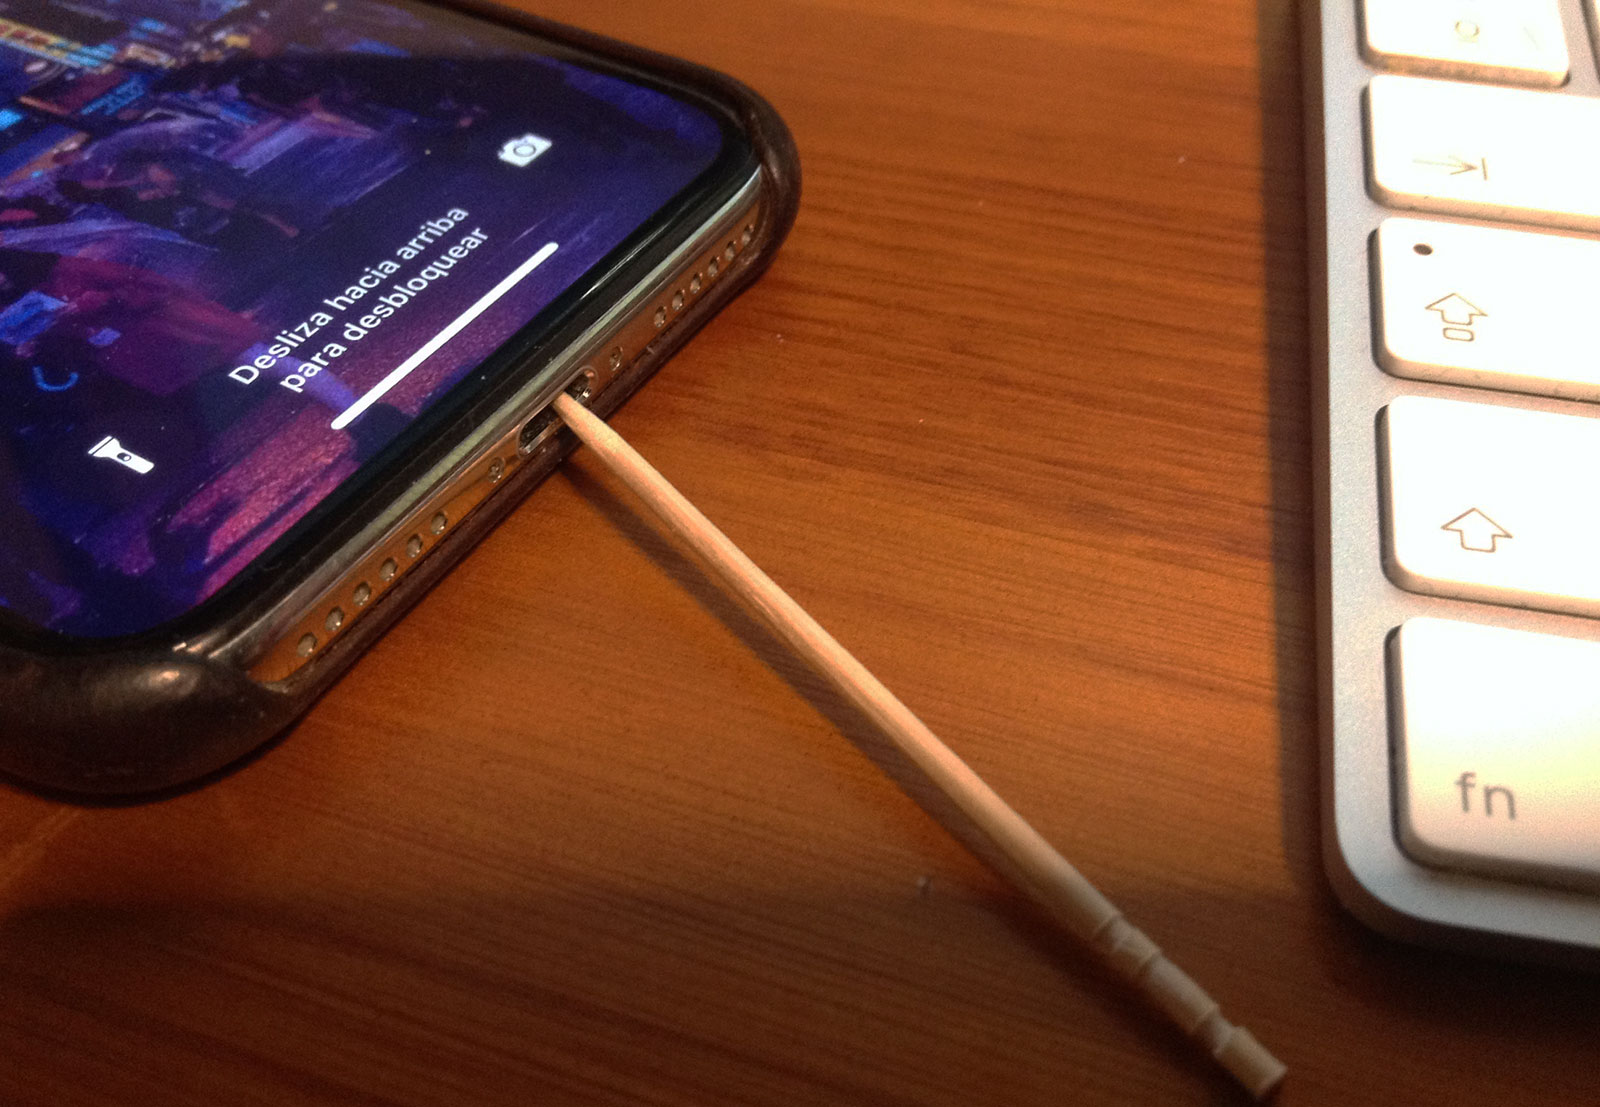 Limpiando el puerto Lightning del iPhone con un palillo de madera